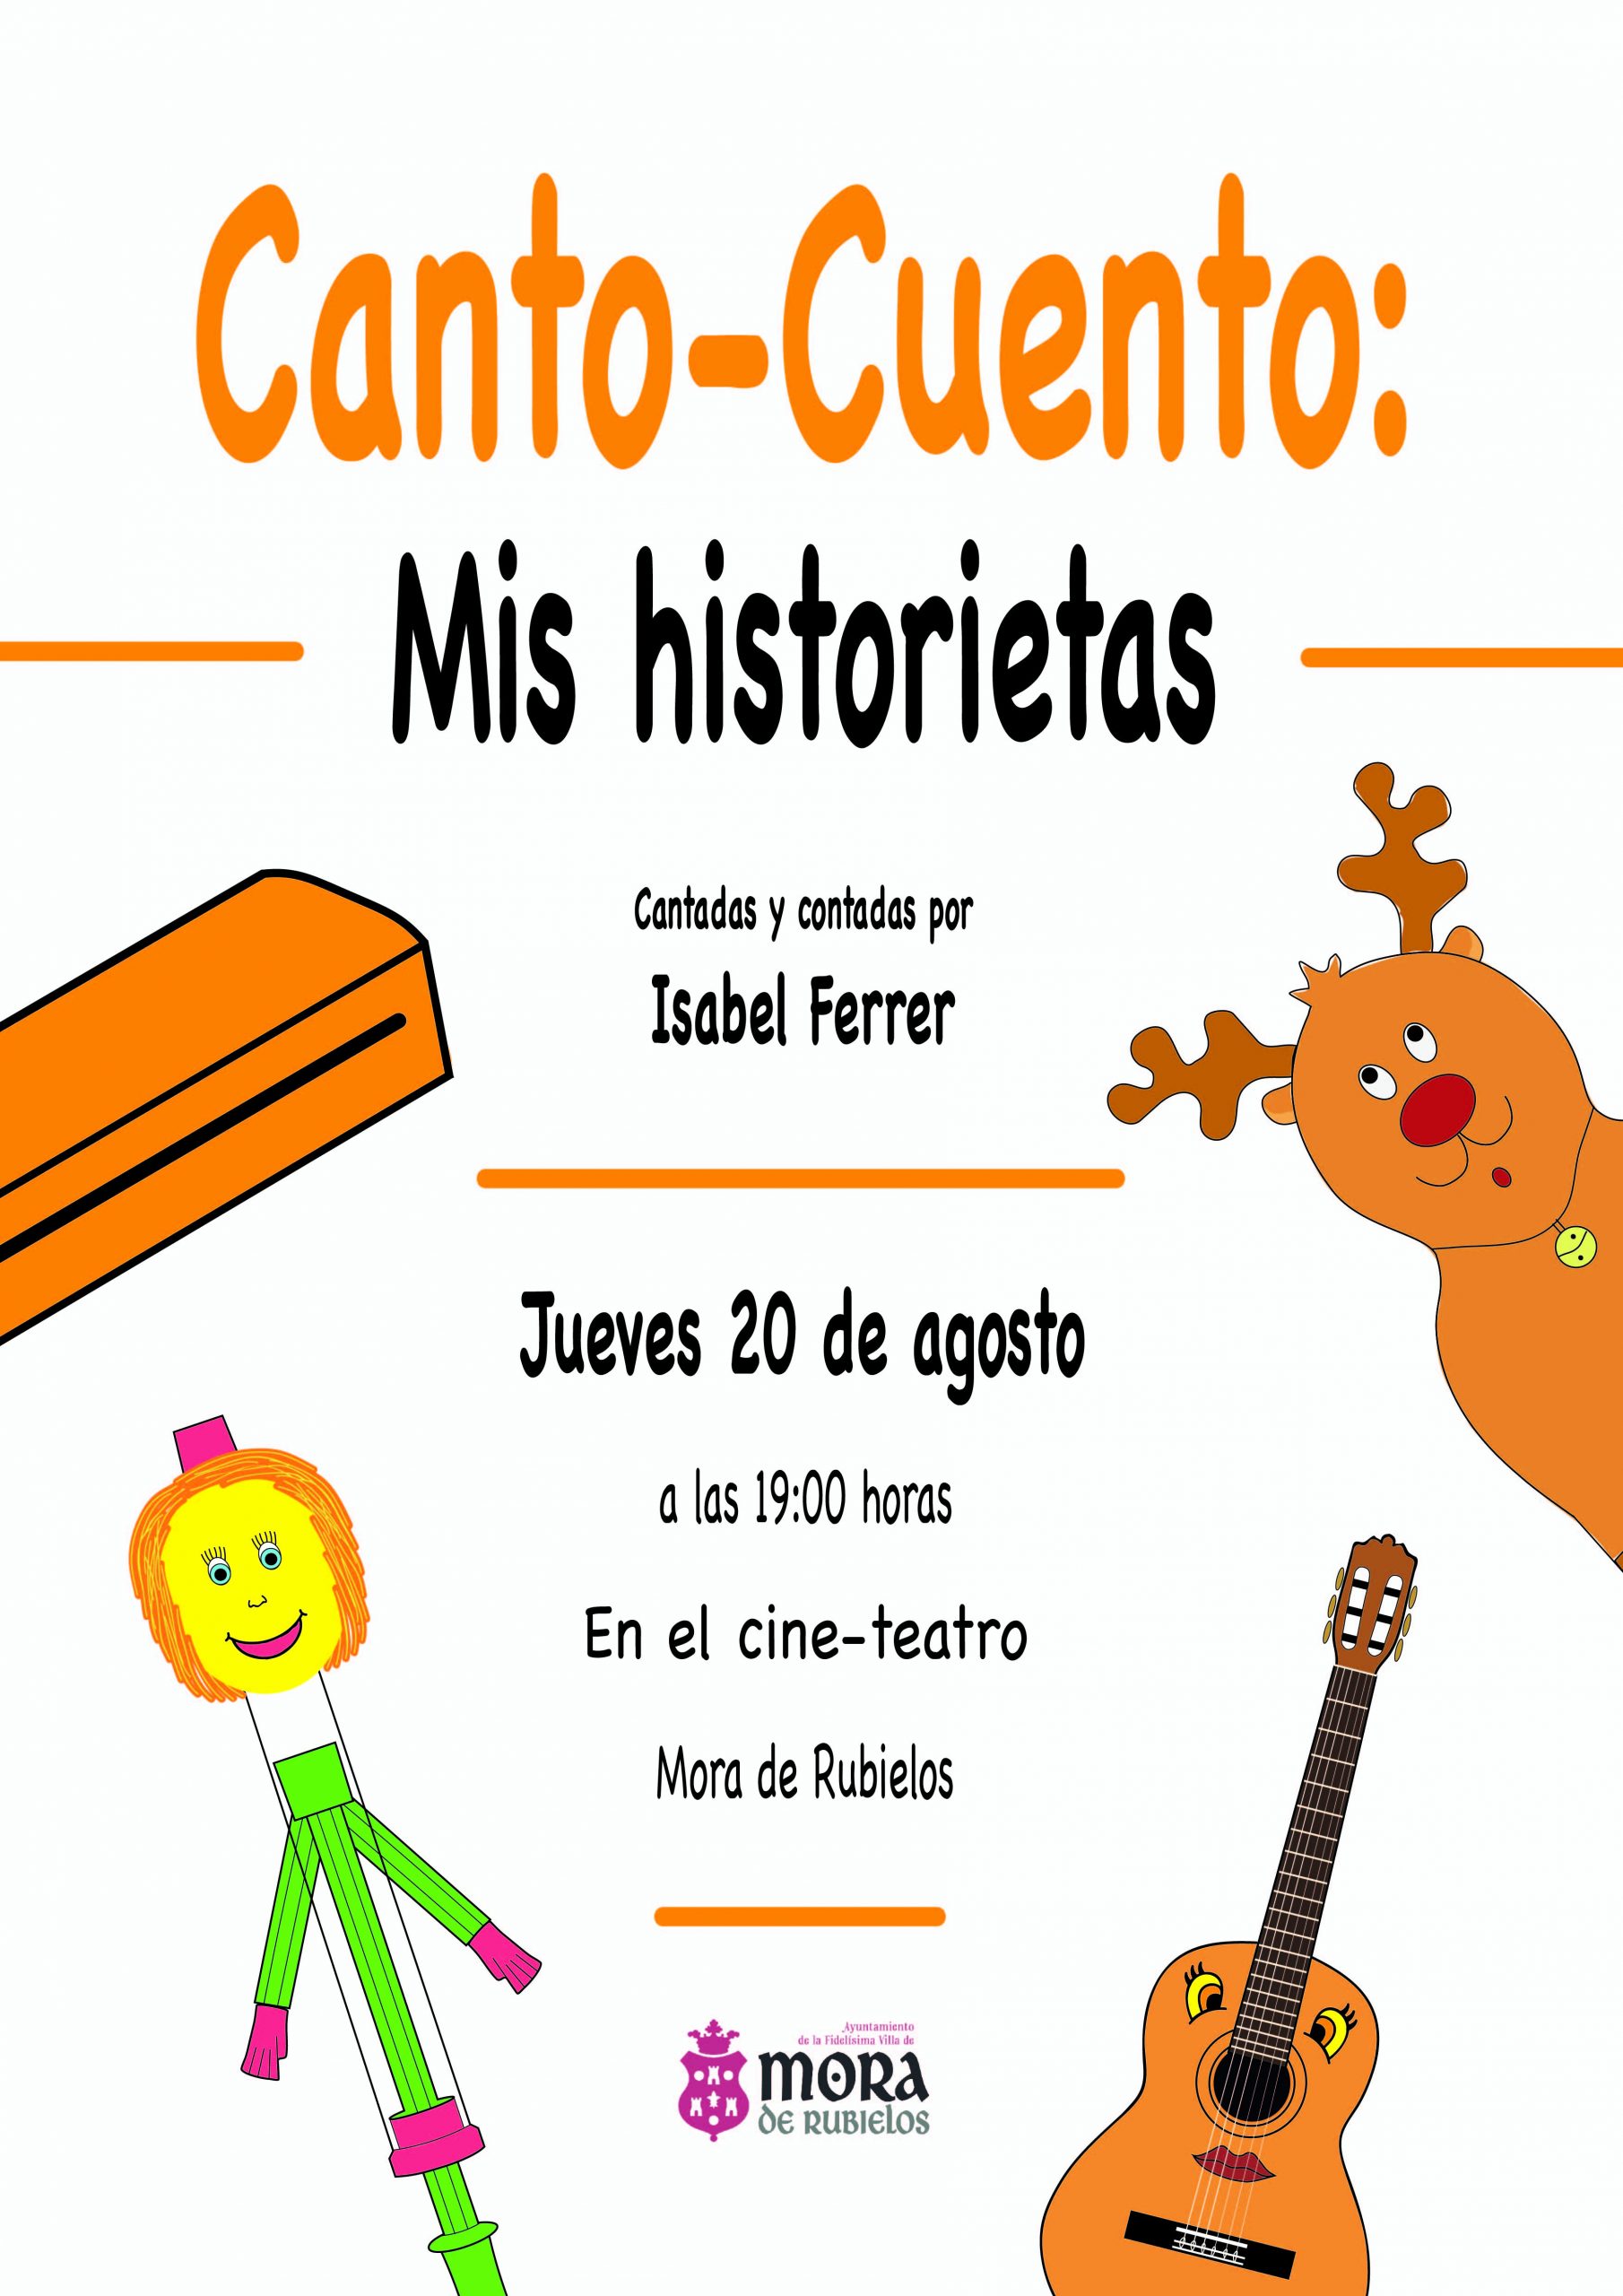 Mis historietas (Canto-Cuento) - Musica y Niños